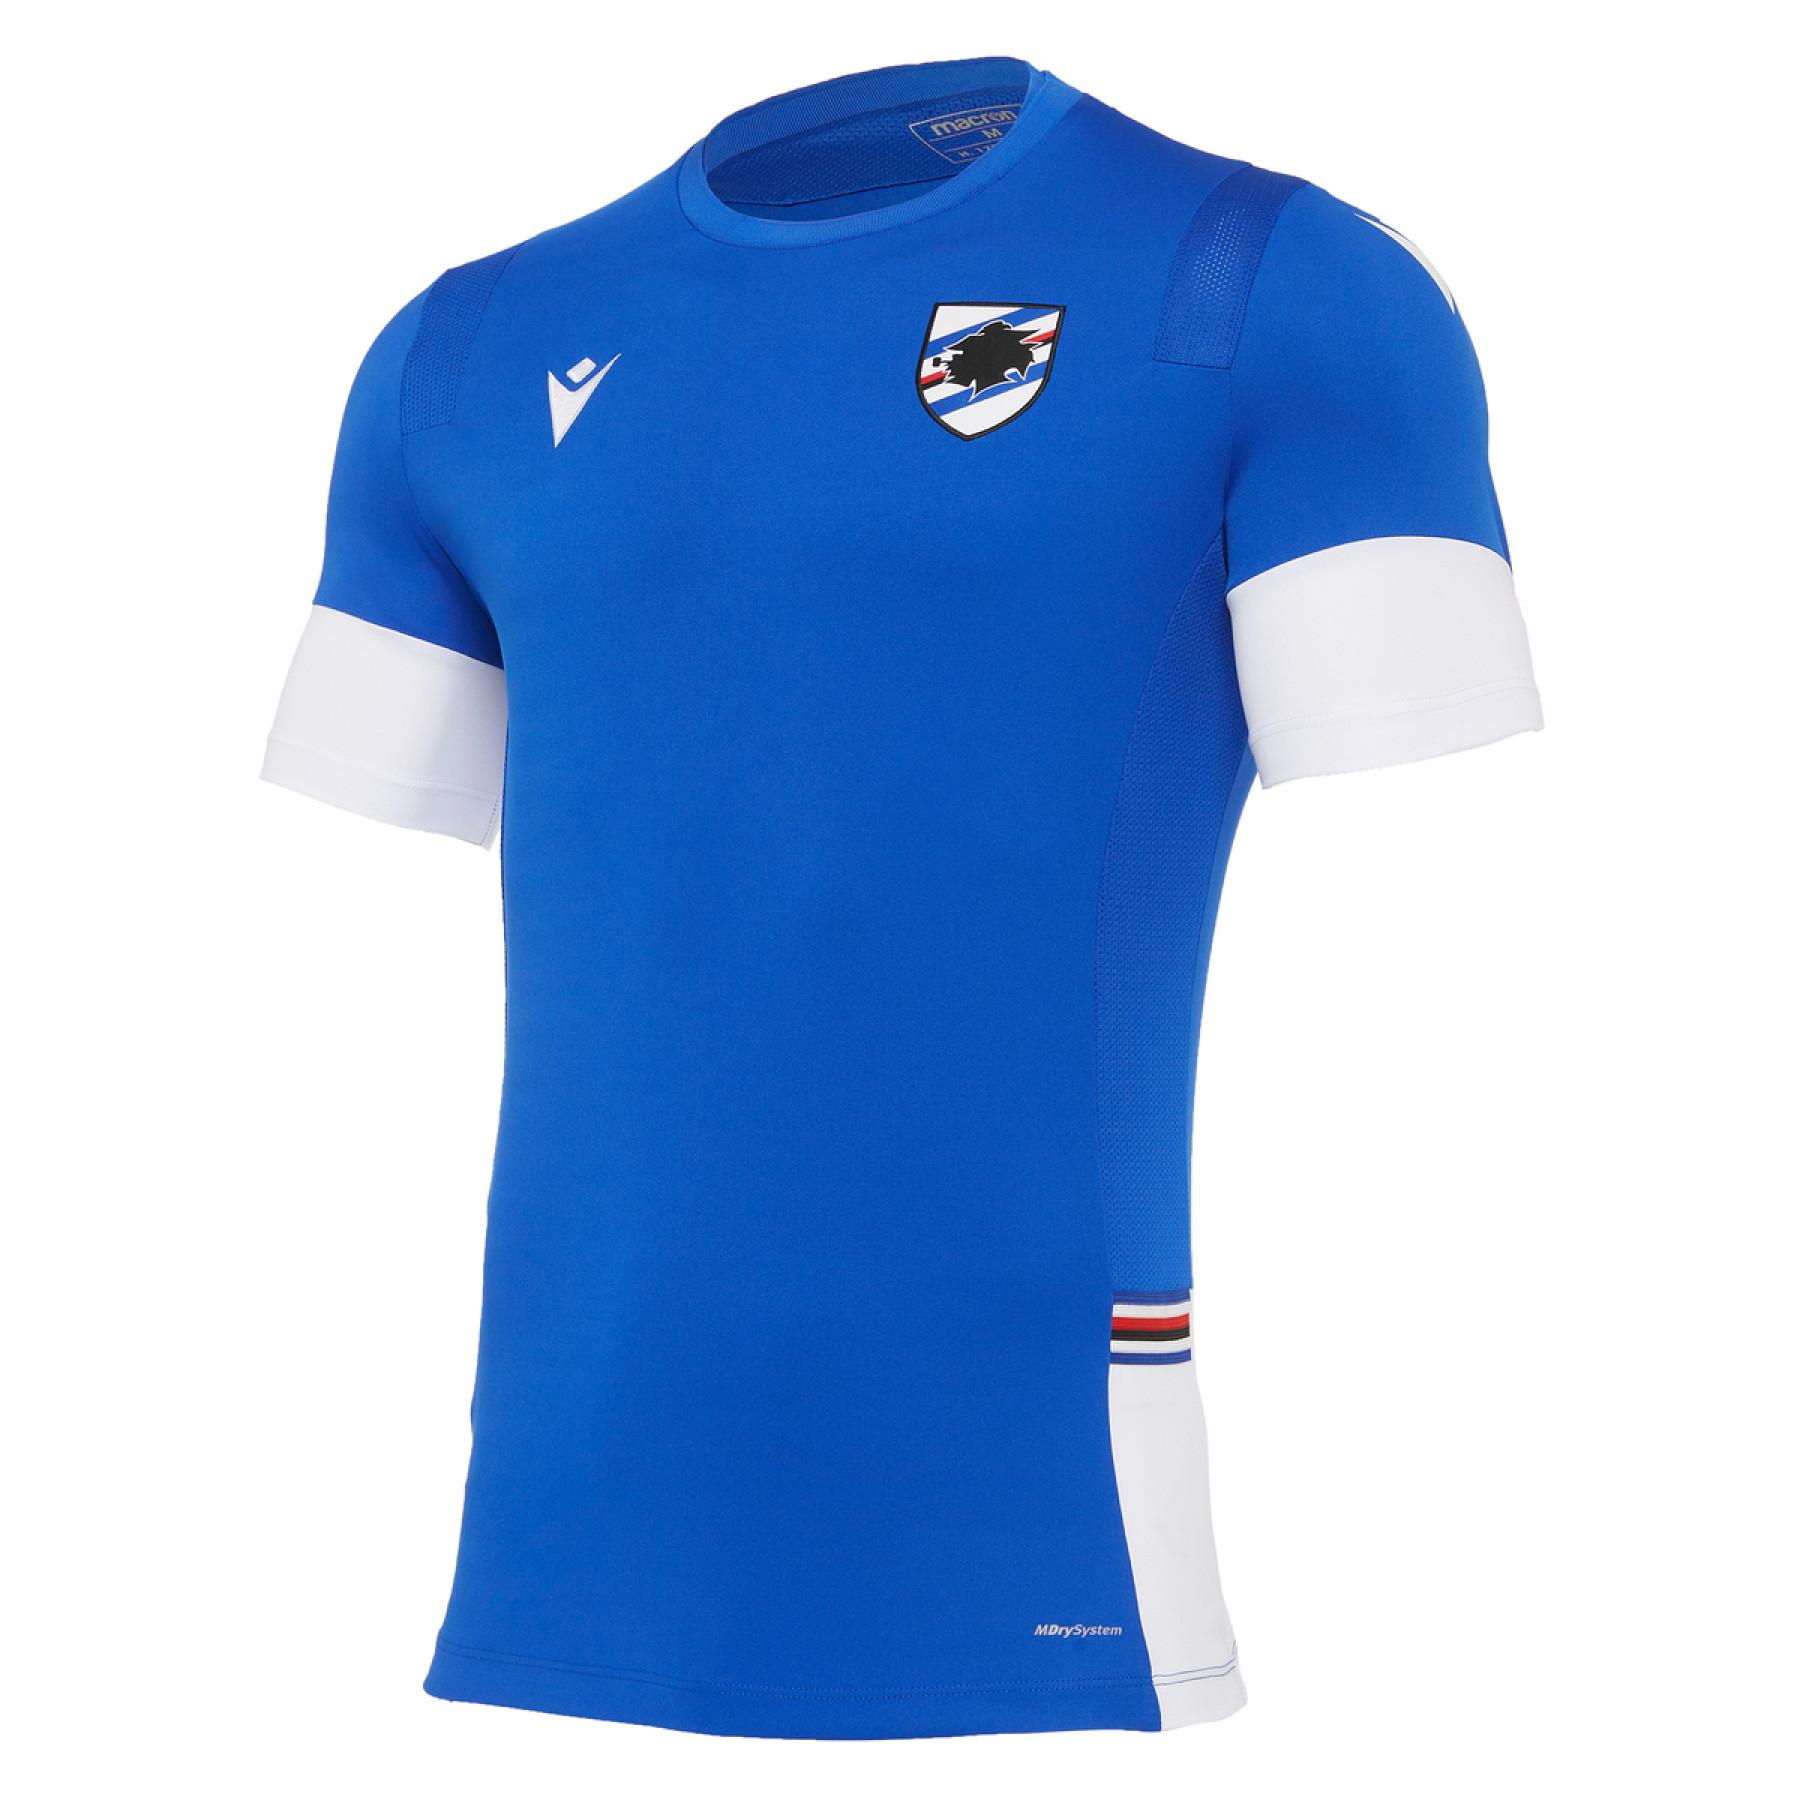 uc sampdoria supporter t-shirt 2020/21